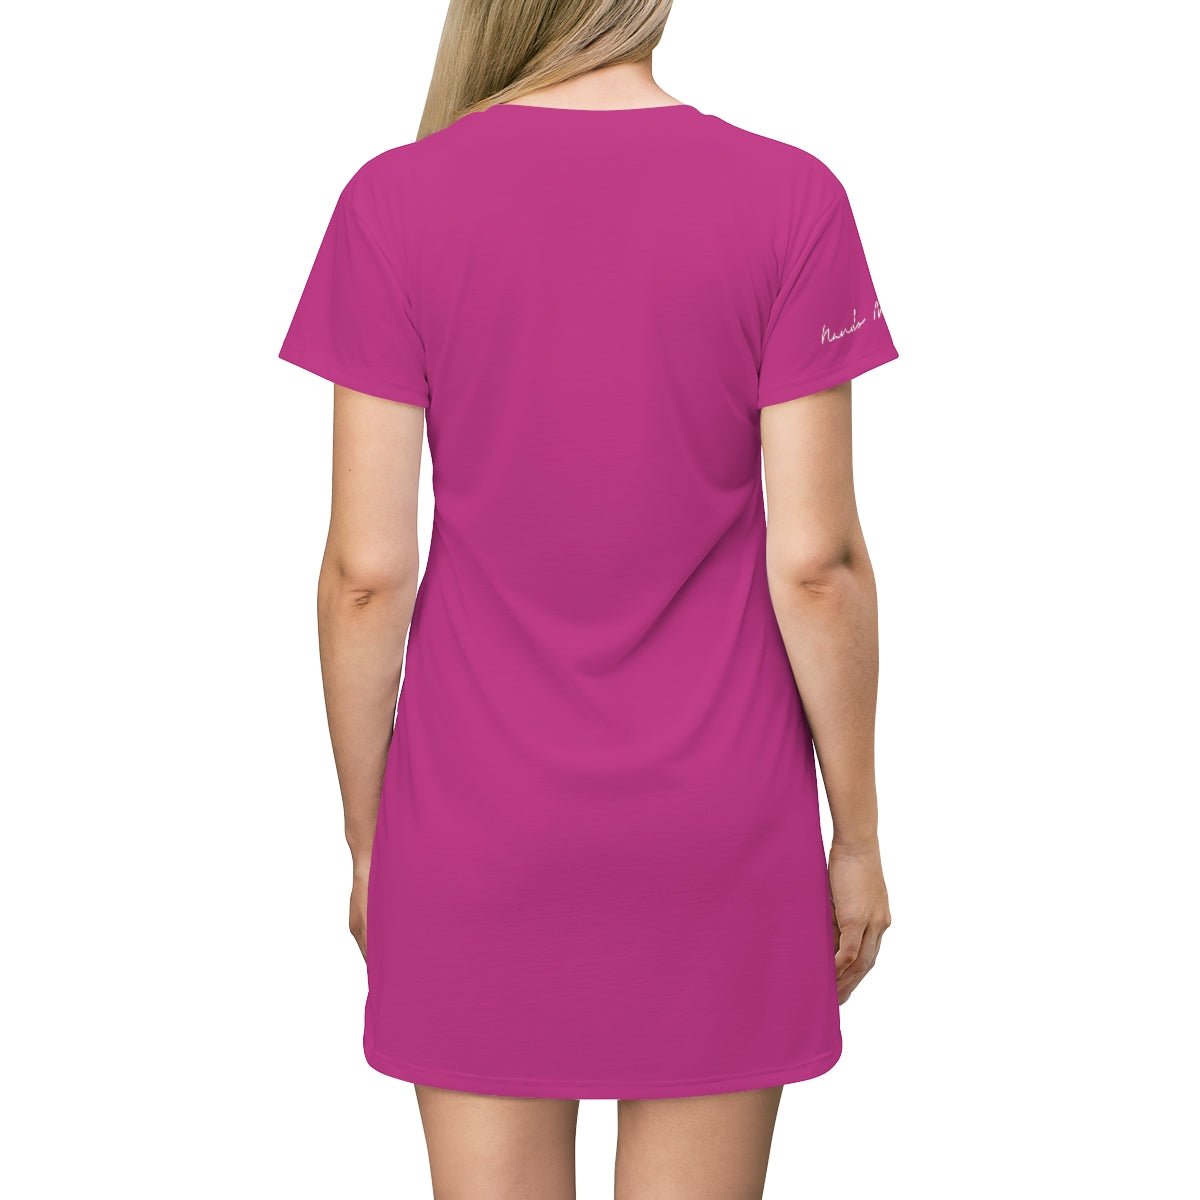 Shirtdress, Pink Calla Lilly Motive